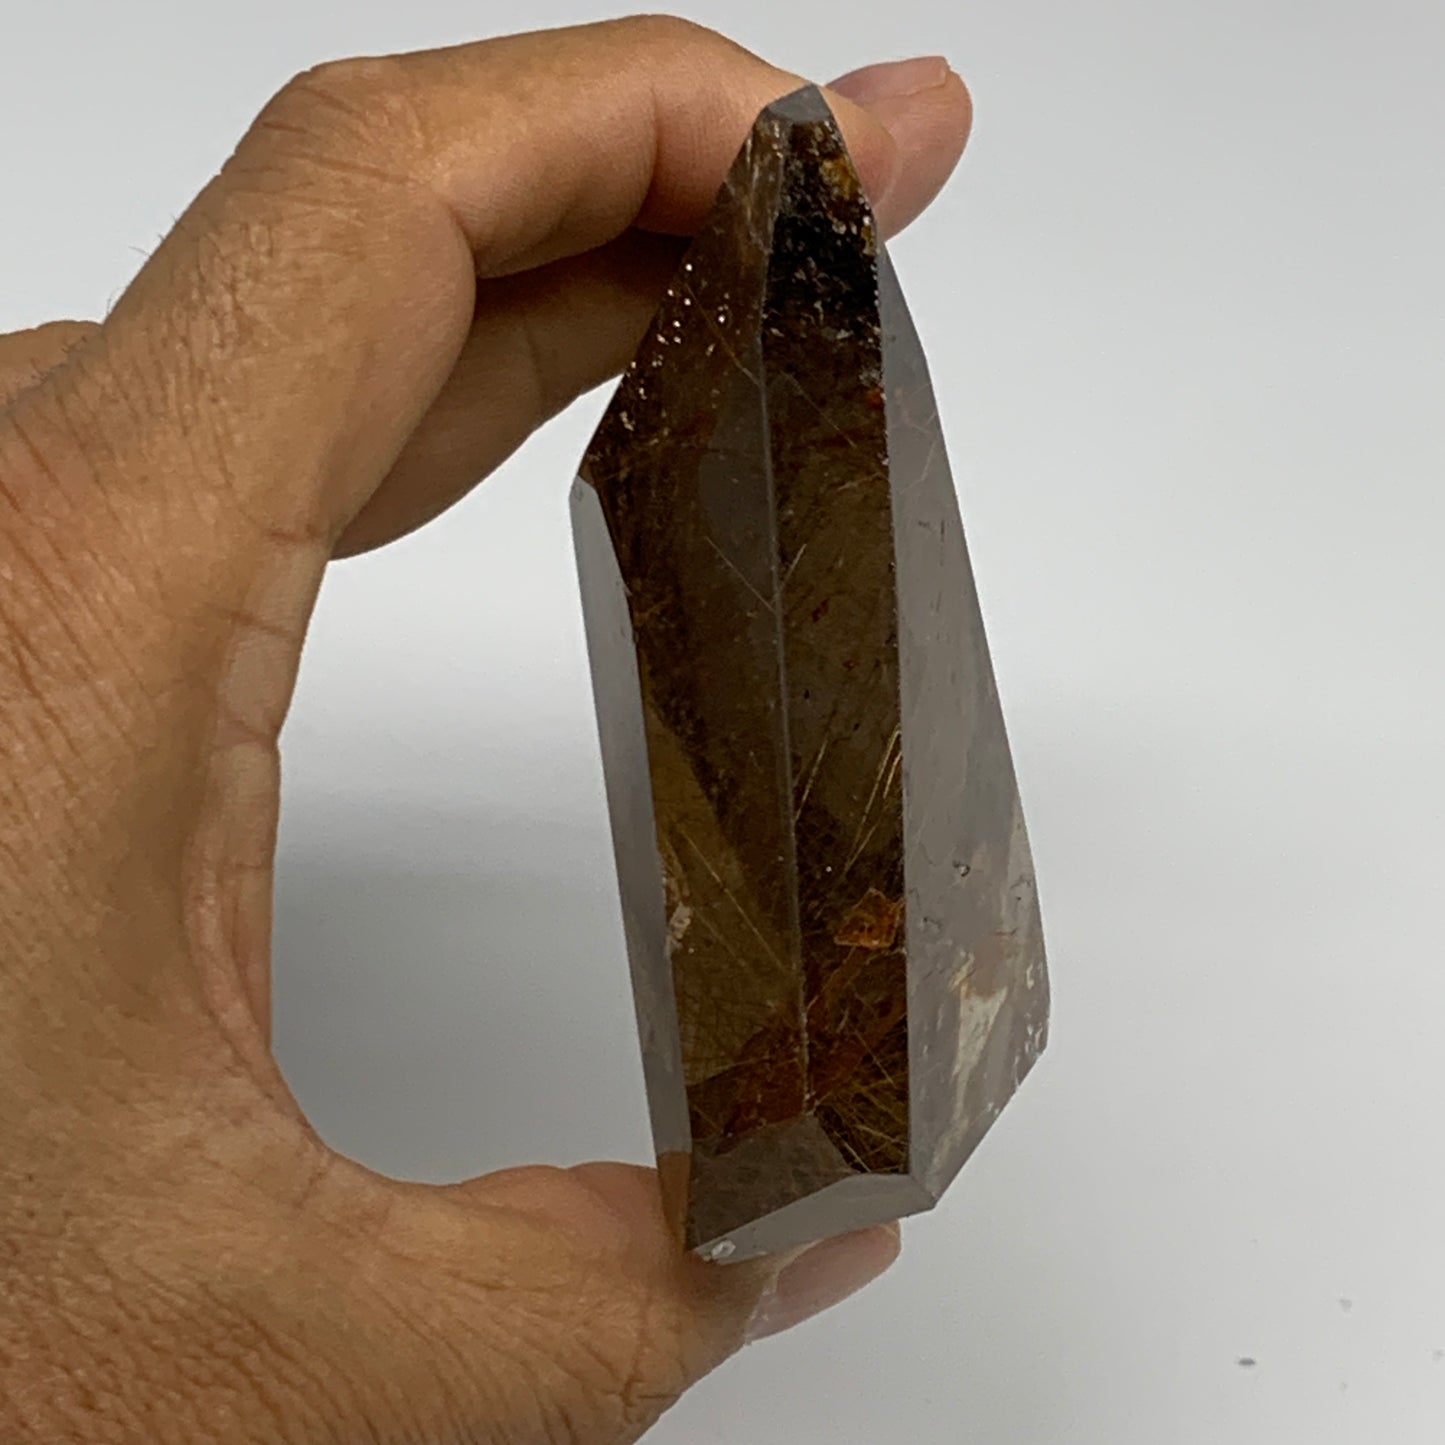 231.4g, 3.4"x2.8"x1.1", Natural Golden Rutile Quartz Crystal Chunk from Brazil,B